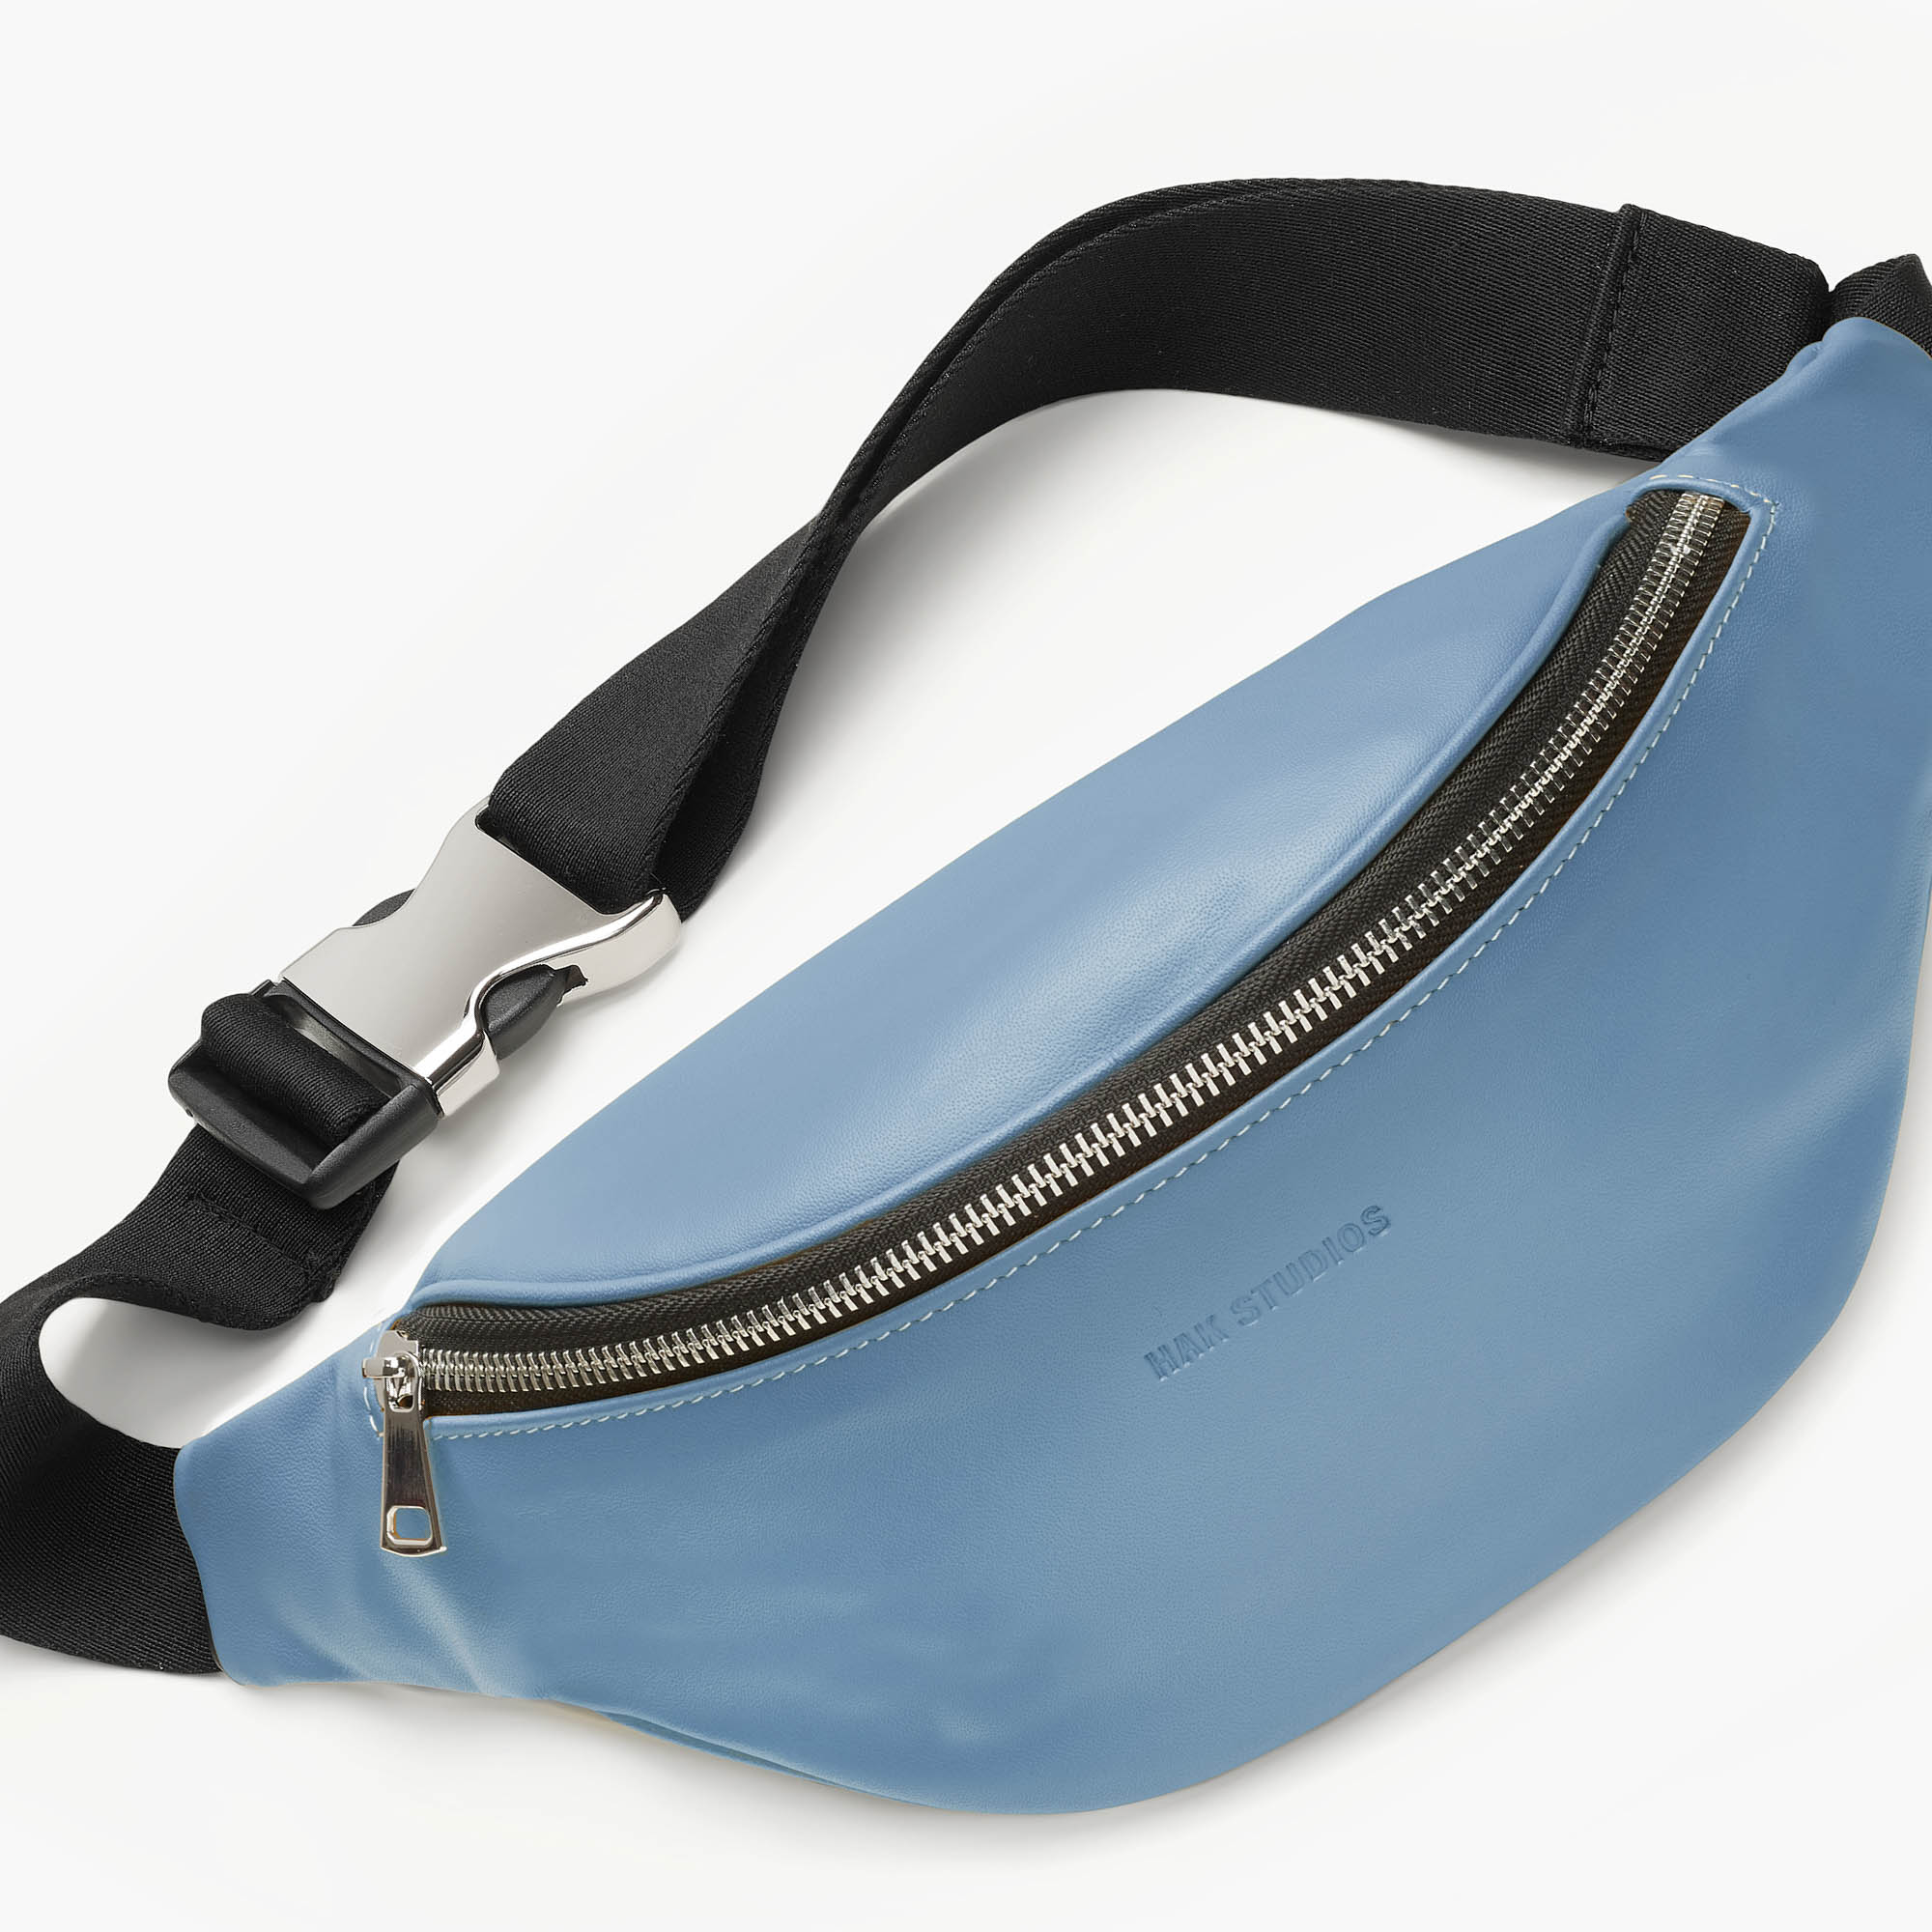 Leather belt bag in blue color